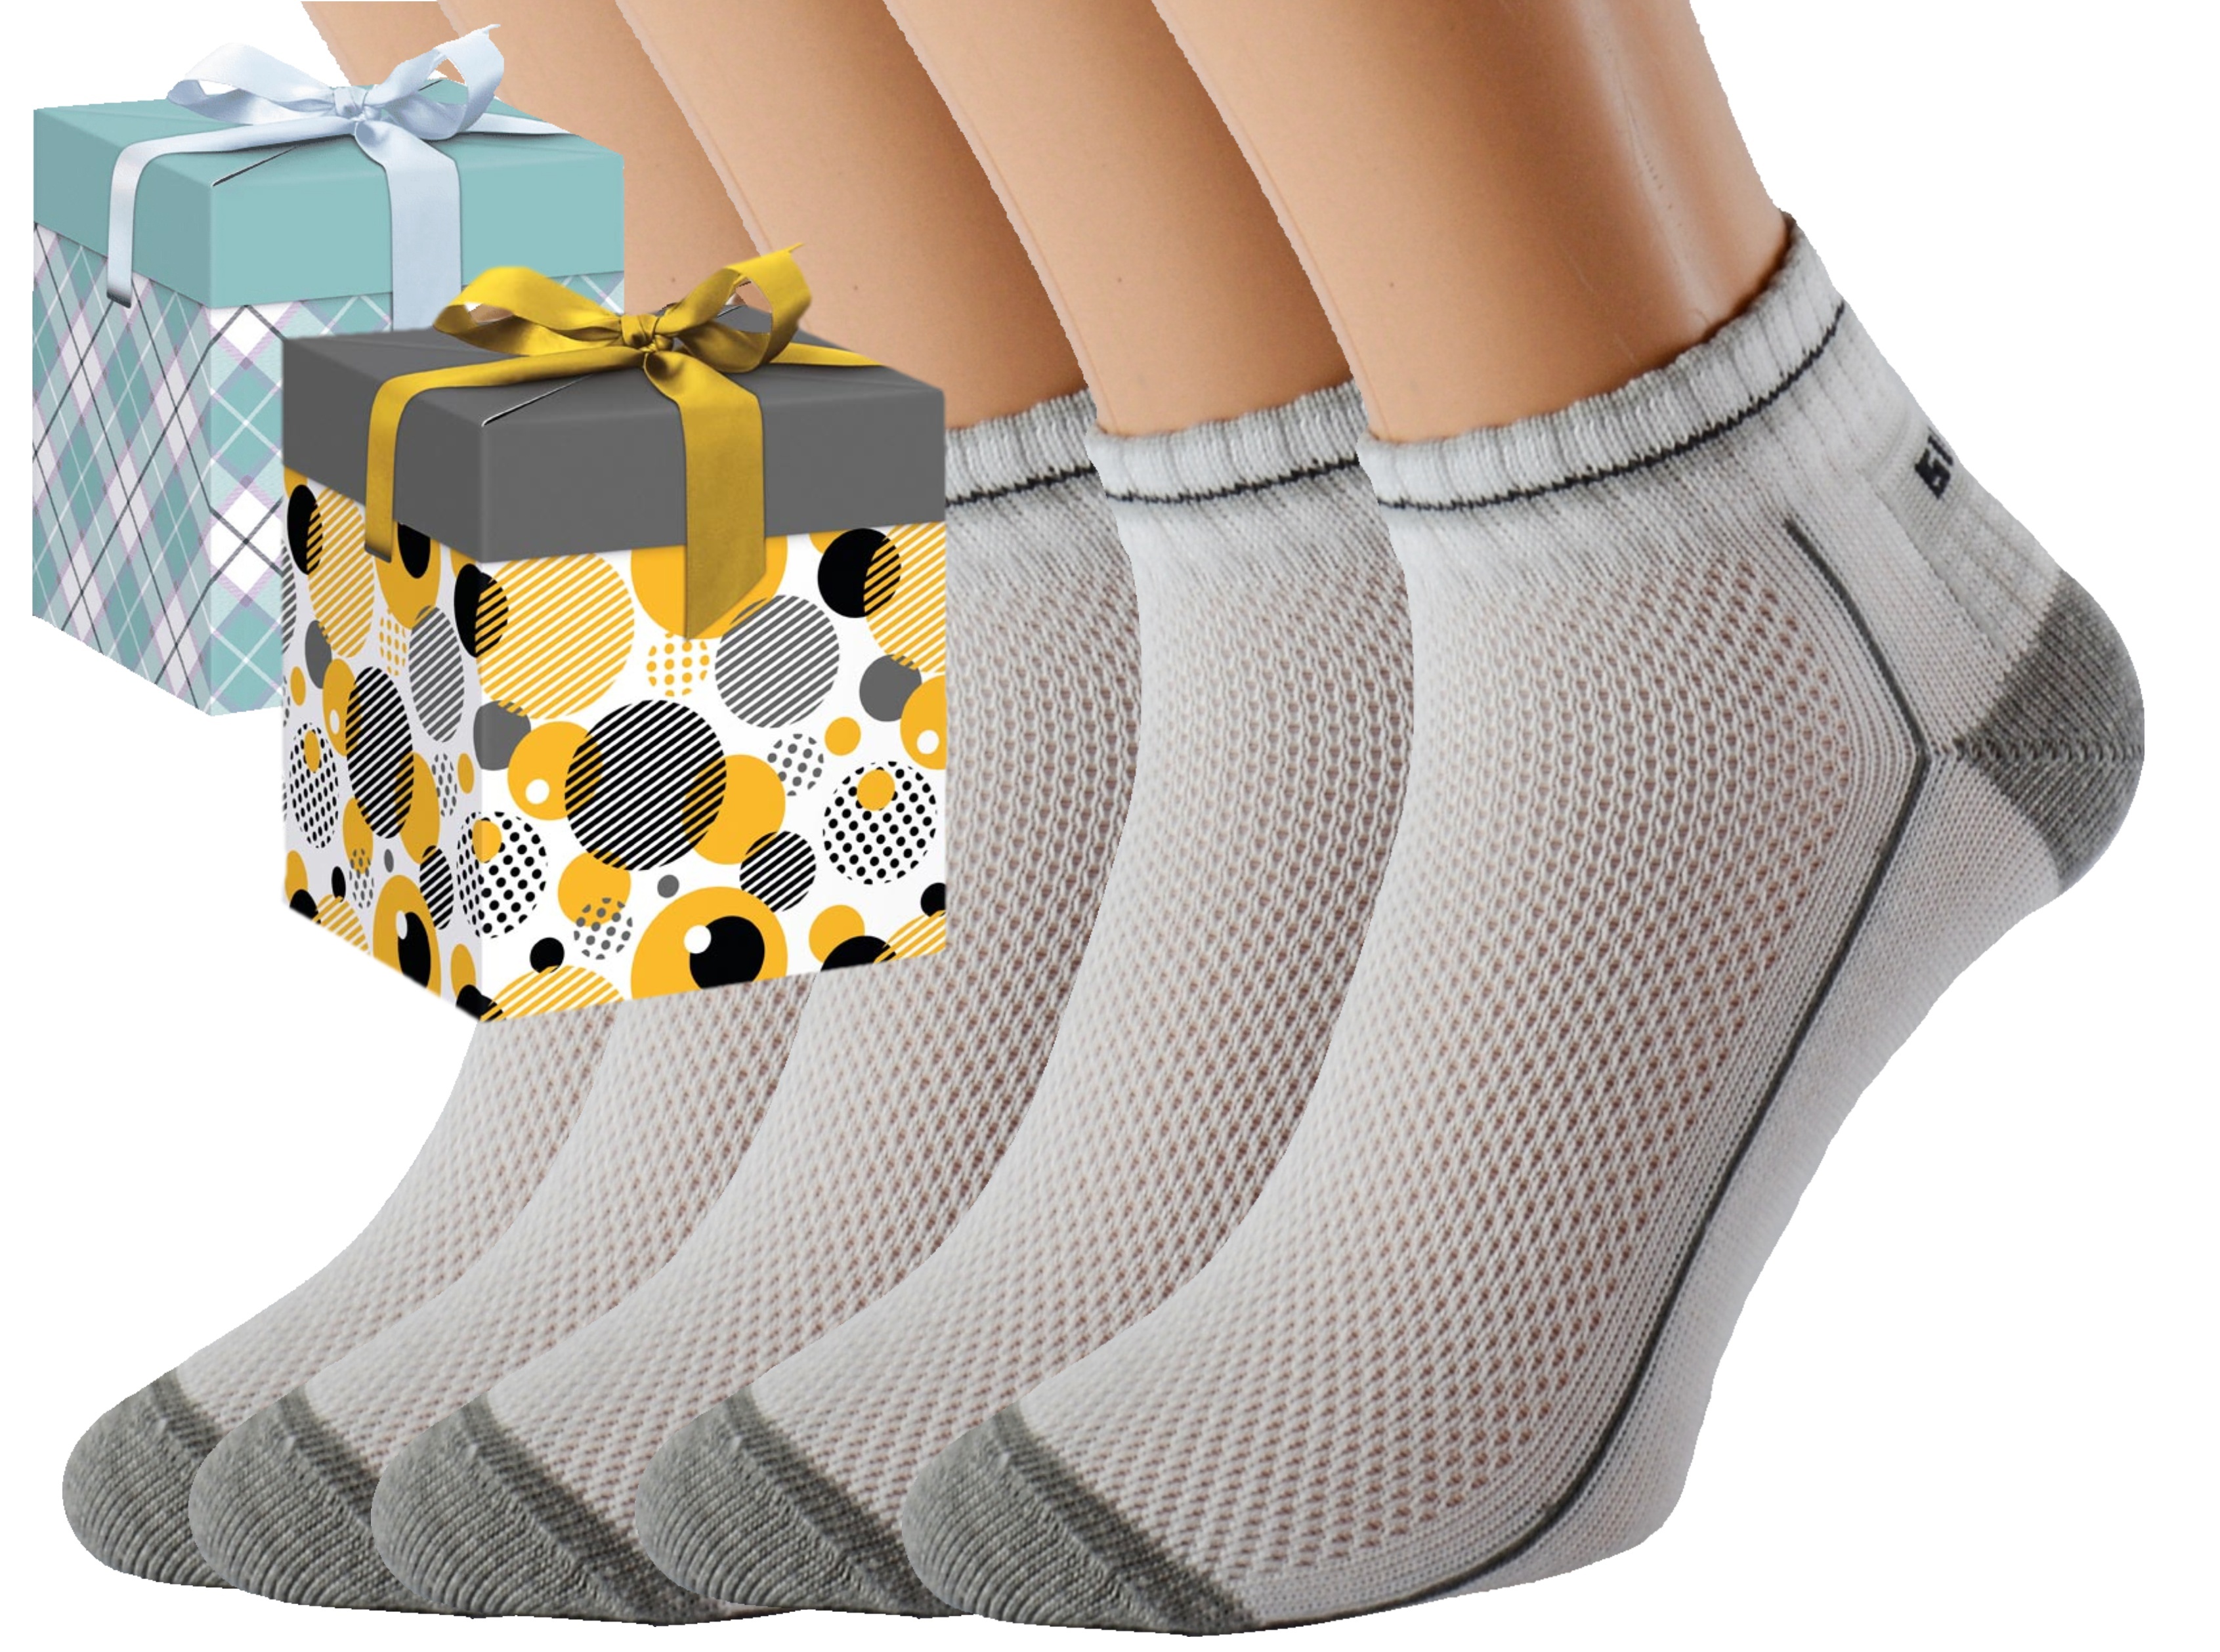 Dárkové balení 5 párů zdravotních ponožek EMIL Barva: Bílé, Velikost: EUR 39-42 (UK 6-8), Zvolte variantu dárkového balení: Modrá s oky